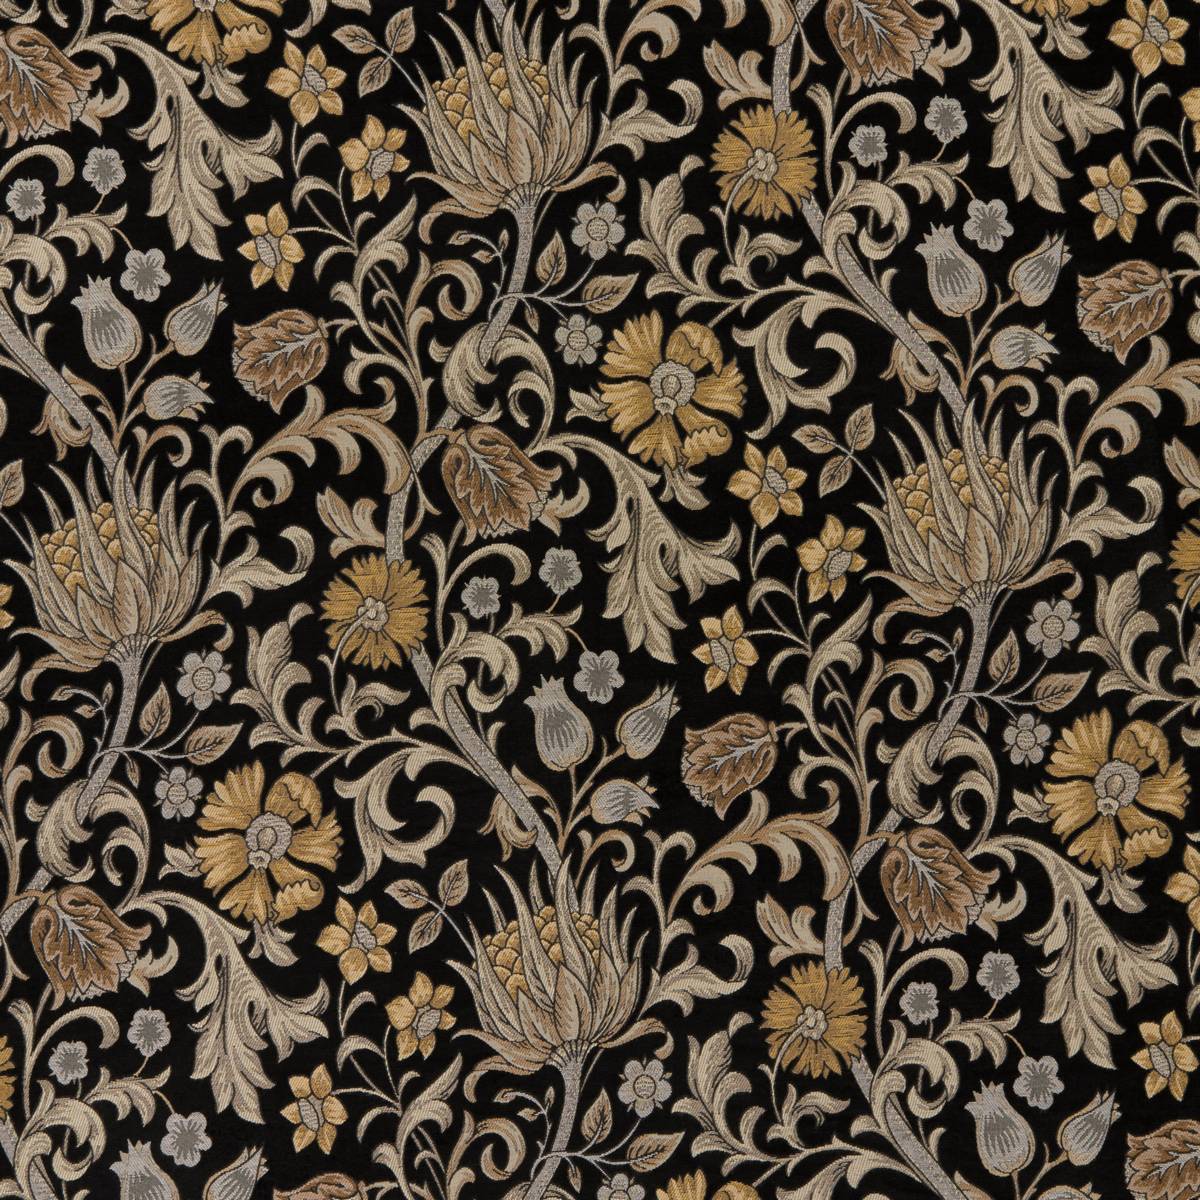 Chalfont Saffron Fabric by iLiv